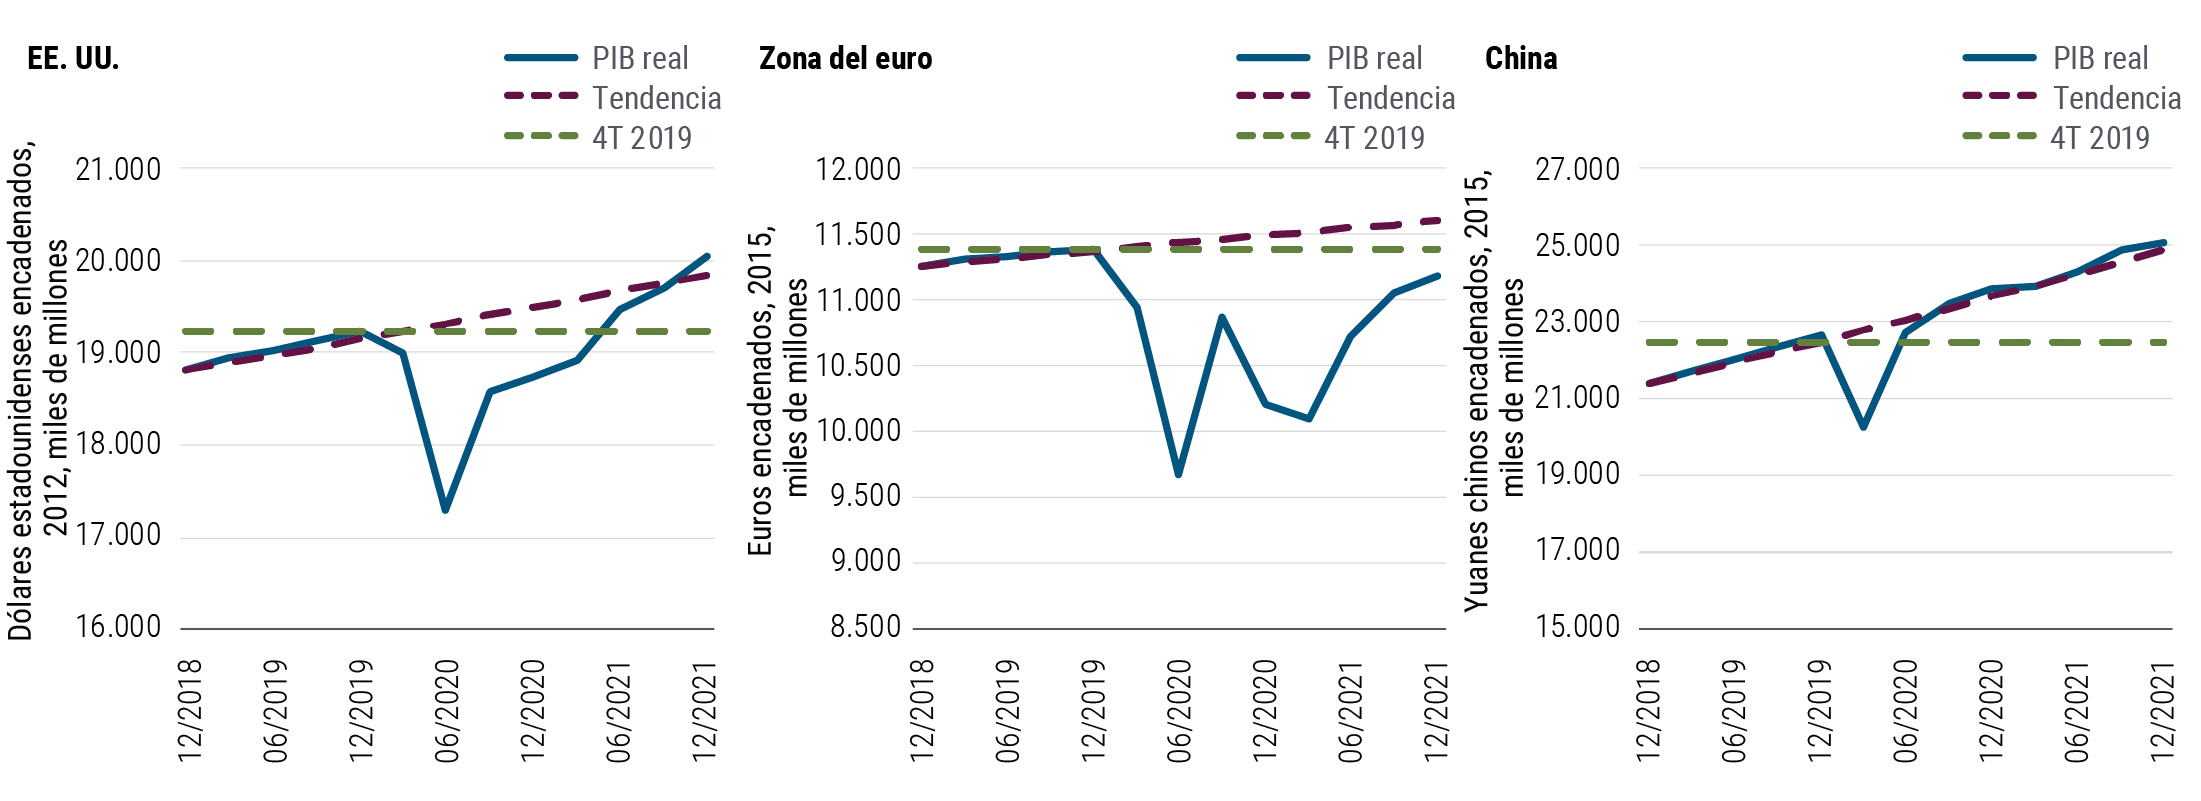 El Gráfico 1 muestra la tendencia proyectada del PIB real (producto interno bruto) en tres economías principales —Estados Unidos, zona del euro y China— en relación con el PIB tendencial y el nivel del PIB de cada una de ellas en el cuarto trimestre de 2019. Se prevé que el PIB real de los Estados Unidos, tras haber caído abruptamente en el primer semestre de 2020, vuelva a sus niveles del cuarto trimestre de 2019 a mediados de 2021 y a su nivel de tendencia, más adelante en este año. Se prevé que el PIB real de la zona del euro se mantenga por debajo tanto del PIB de tendencia como de los niveles del PIB del cuarto trimestre de 2019 hasta el final de este año. Por el contrario, el PIB real de China, basado en el yuan encadenado en 2015, superó los niveles del cuarto trimestre de 2019 a mediados de 2020, ya regresó a su nivel de crecimiento de tendencia y está encaminado a alcanzar los 25 billones de yuanes al cierre de 2021.